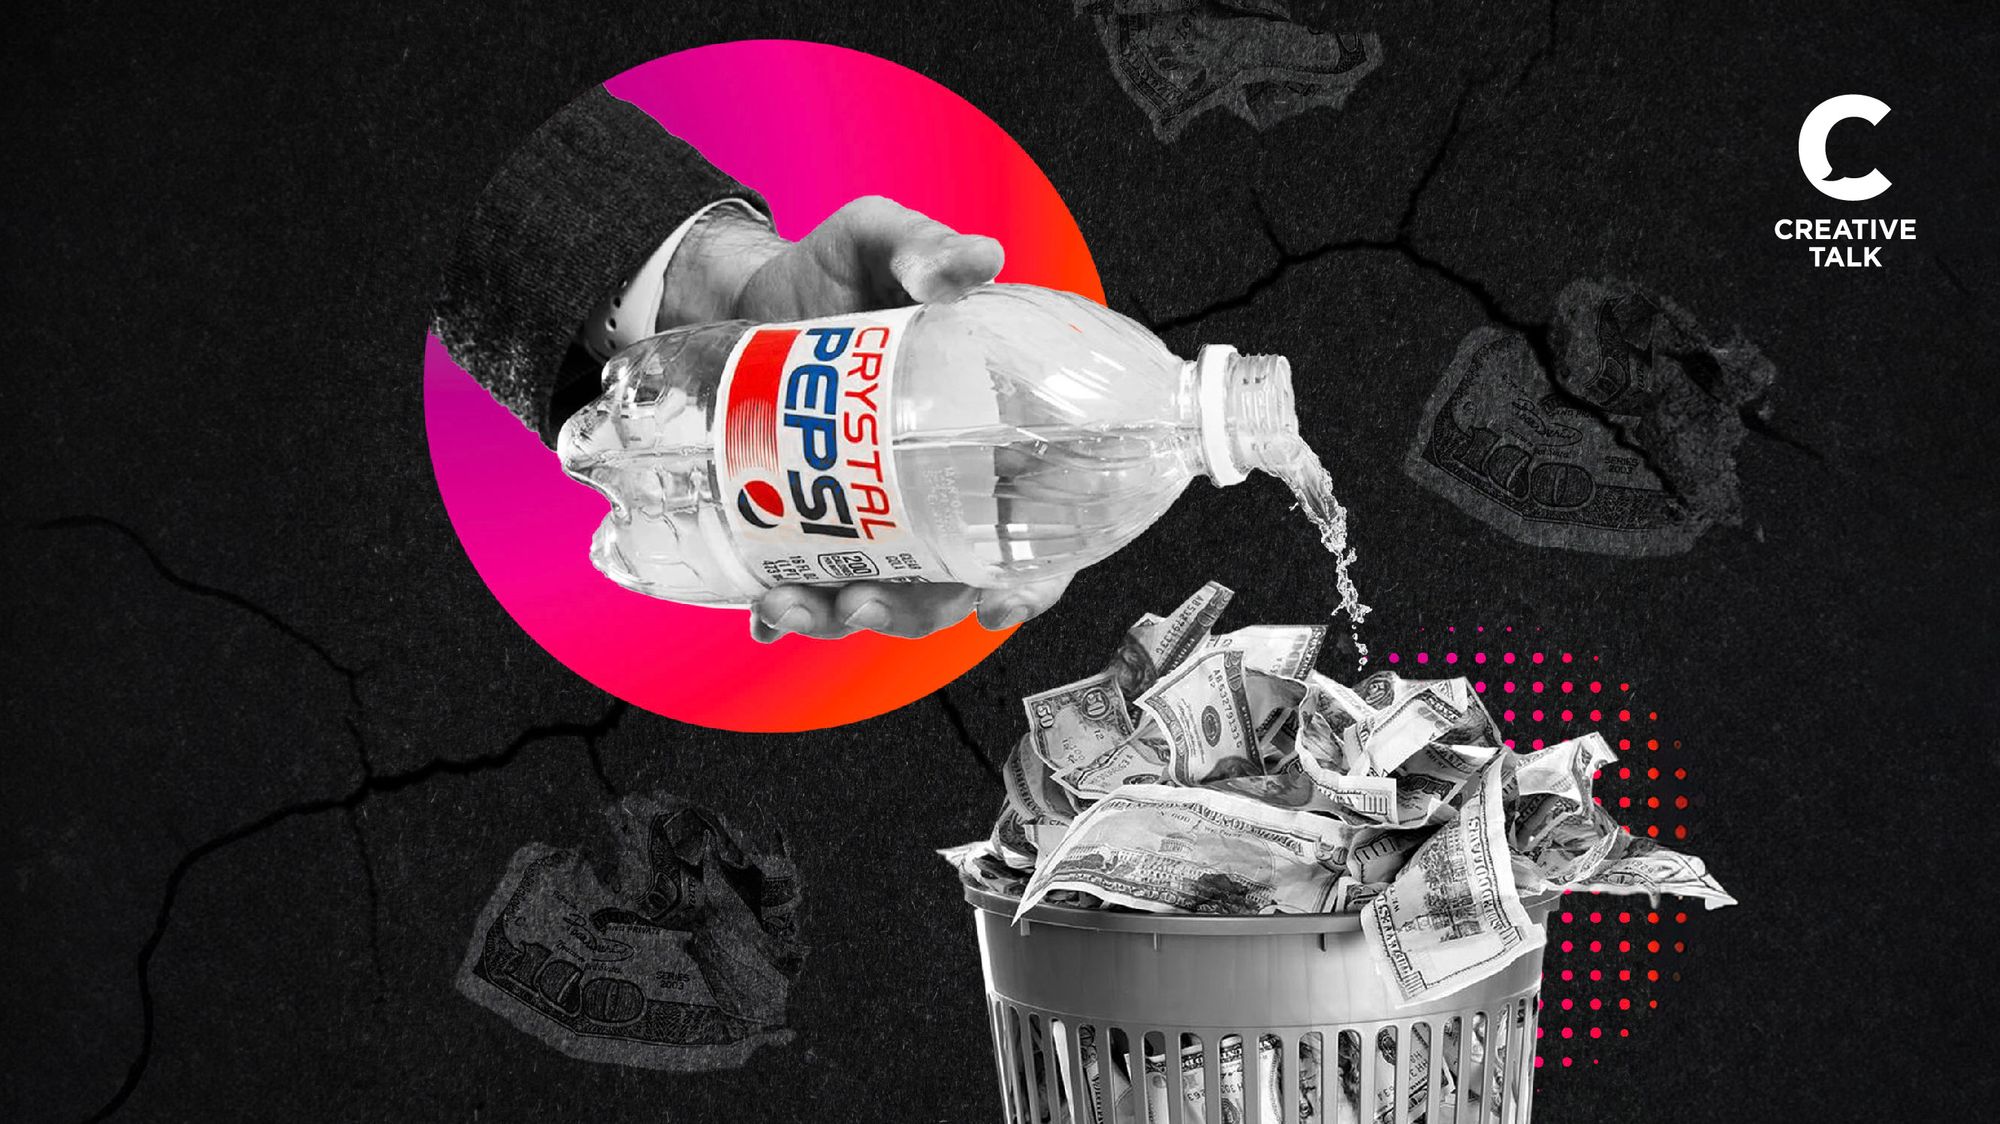 เรื่องเศร้าราคา 300 ล้าน บทเรียนสำคัญจาก Crystal Pepsi นวัตกรรมสุดพังที่ทำให้ Pepsi กลับมาให้ความสำคัญในเอกลักษณ์ของแบรนด์